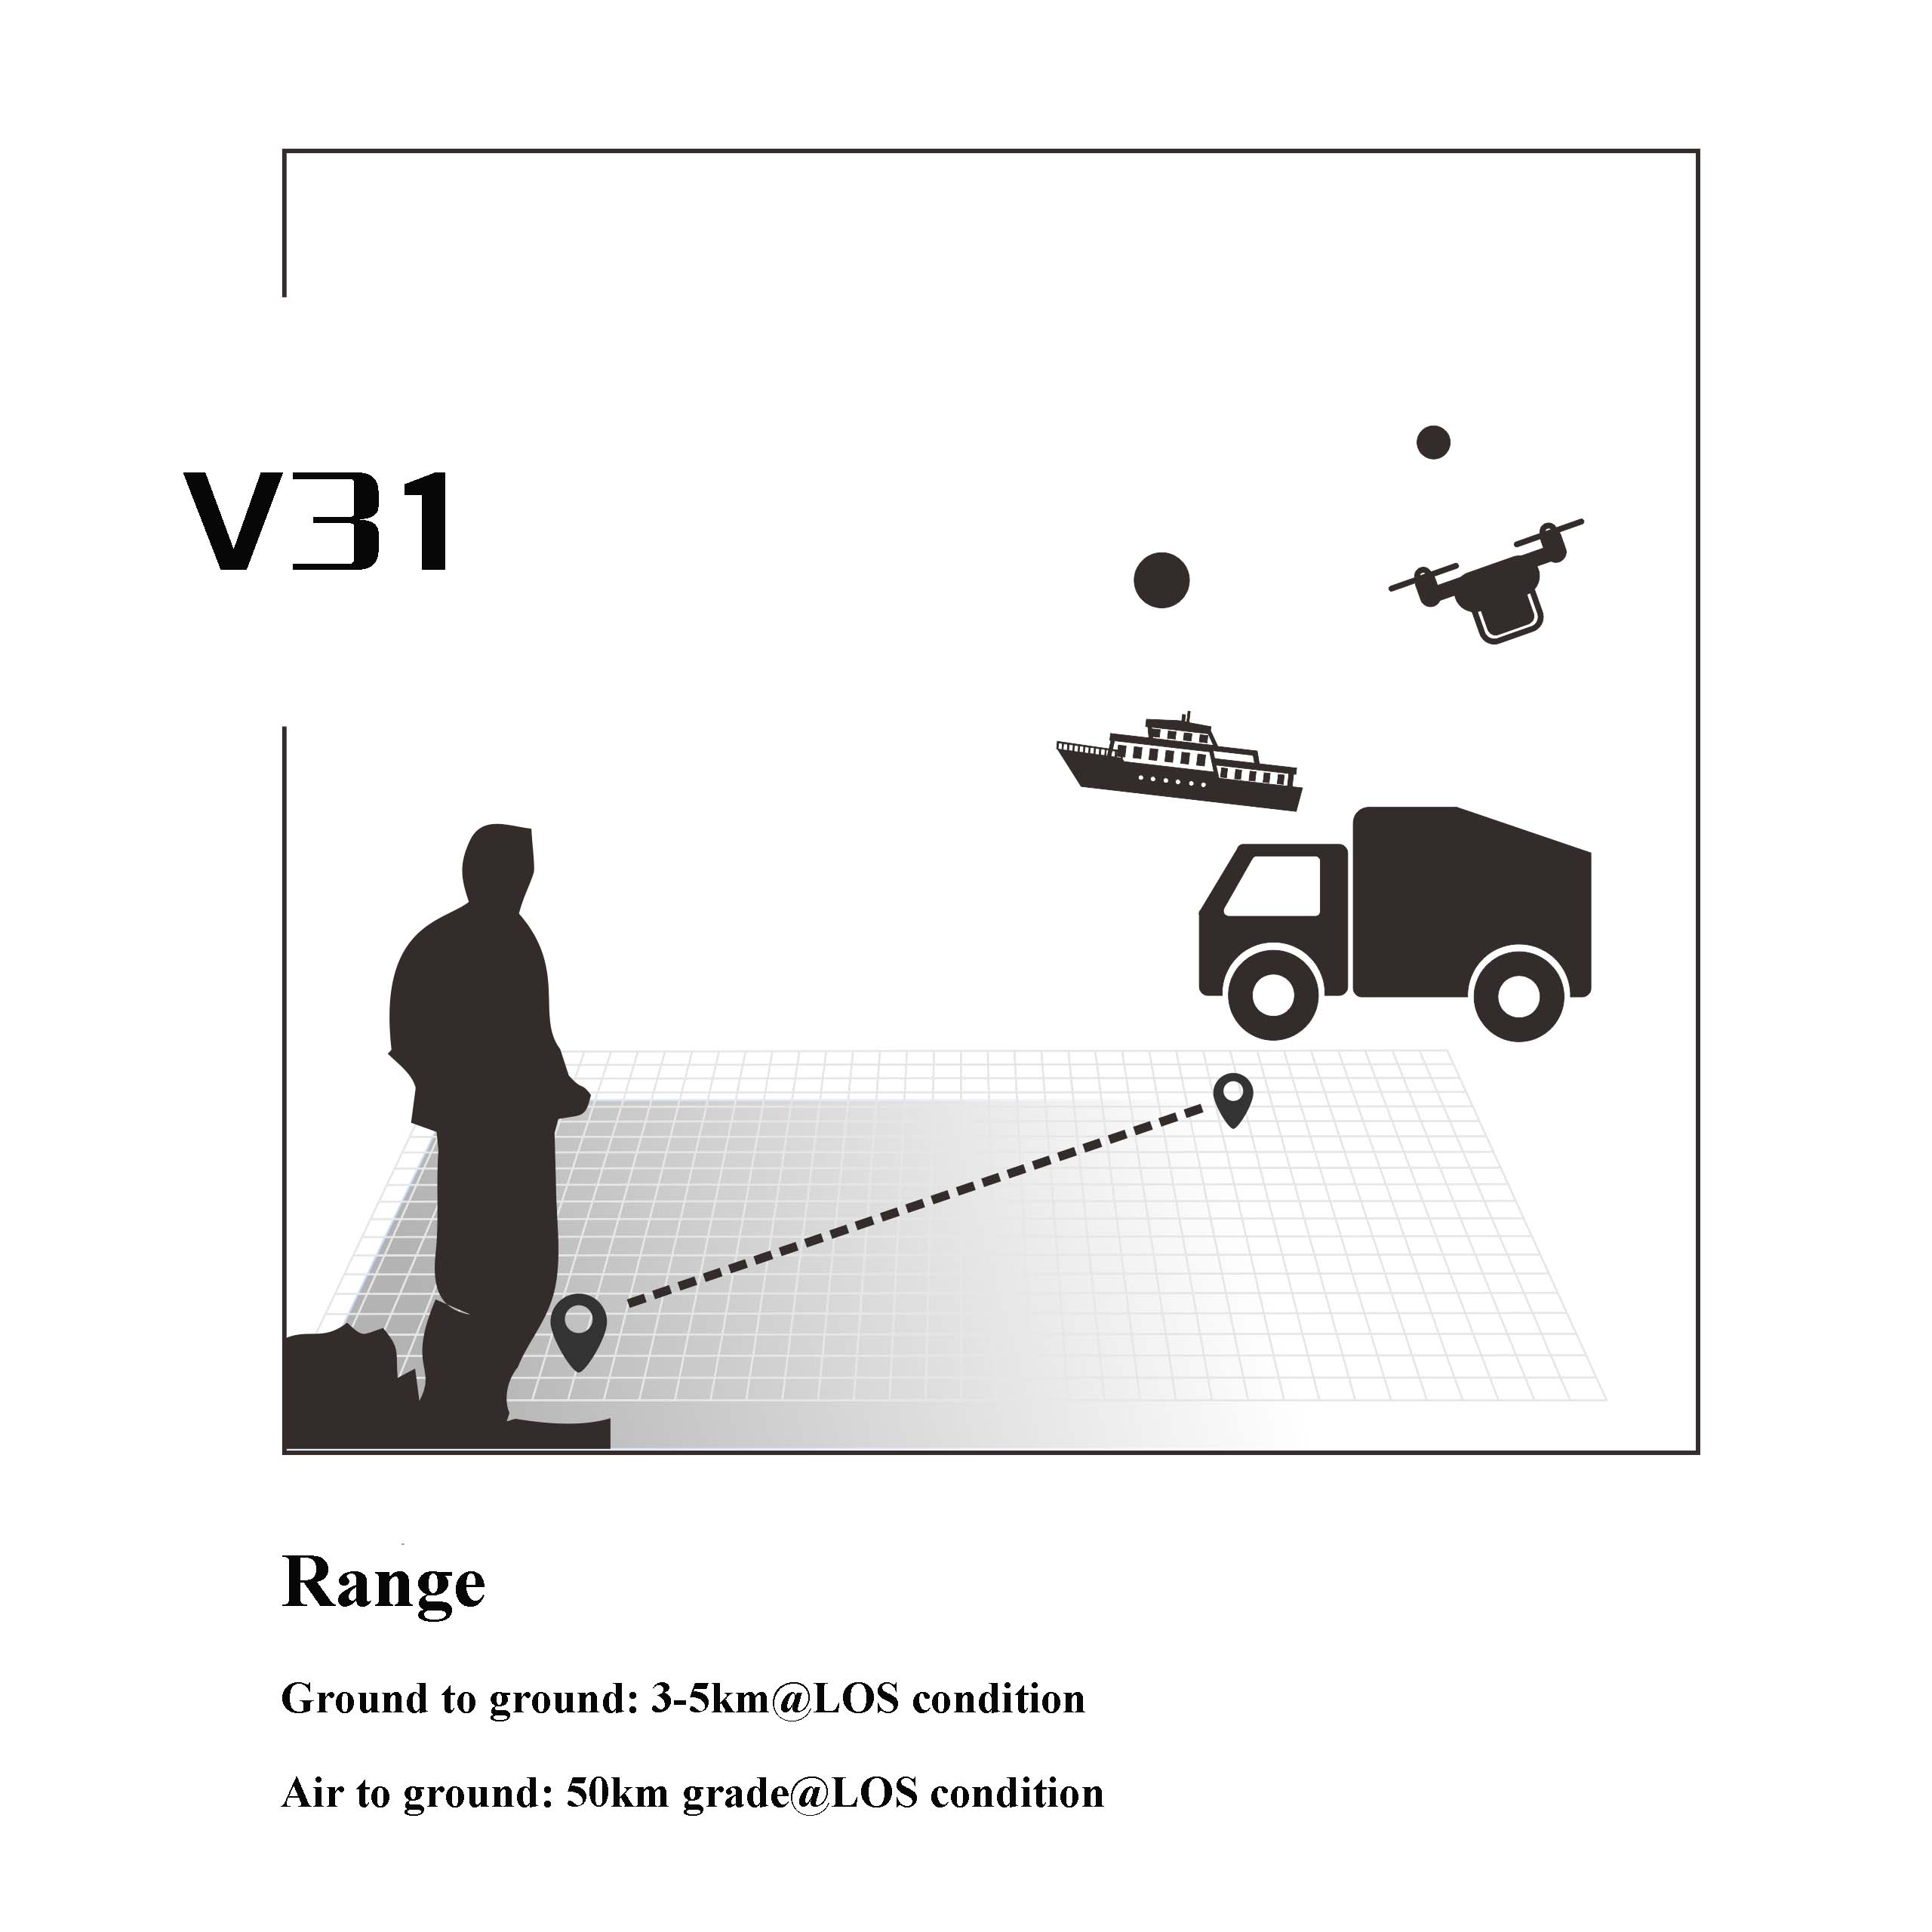 V31 Набір для зв'язку V31 : відео, телеметрія, управління - 20 км